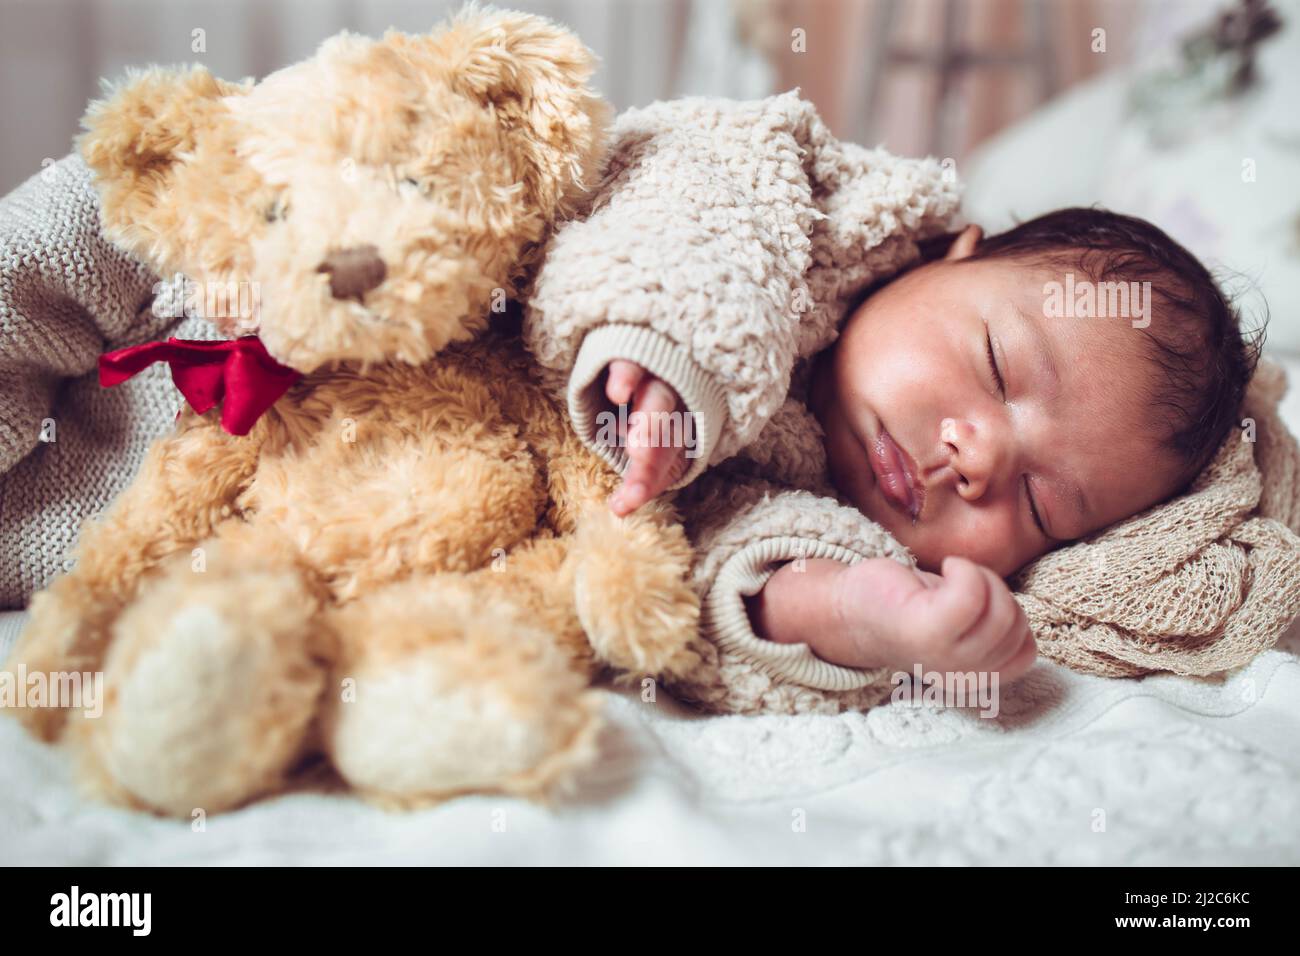 Bebé Recién Nacido Que Duerme Con Un Oso De Peluche Fotos, retratos,  imágenes y fotografía de archivo libres de derecho. Image 71656251